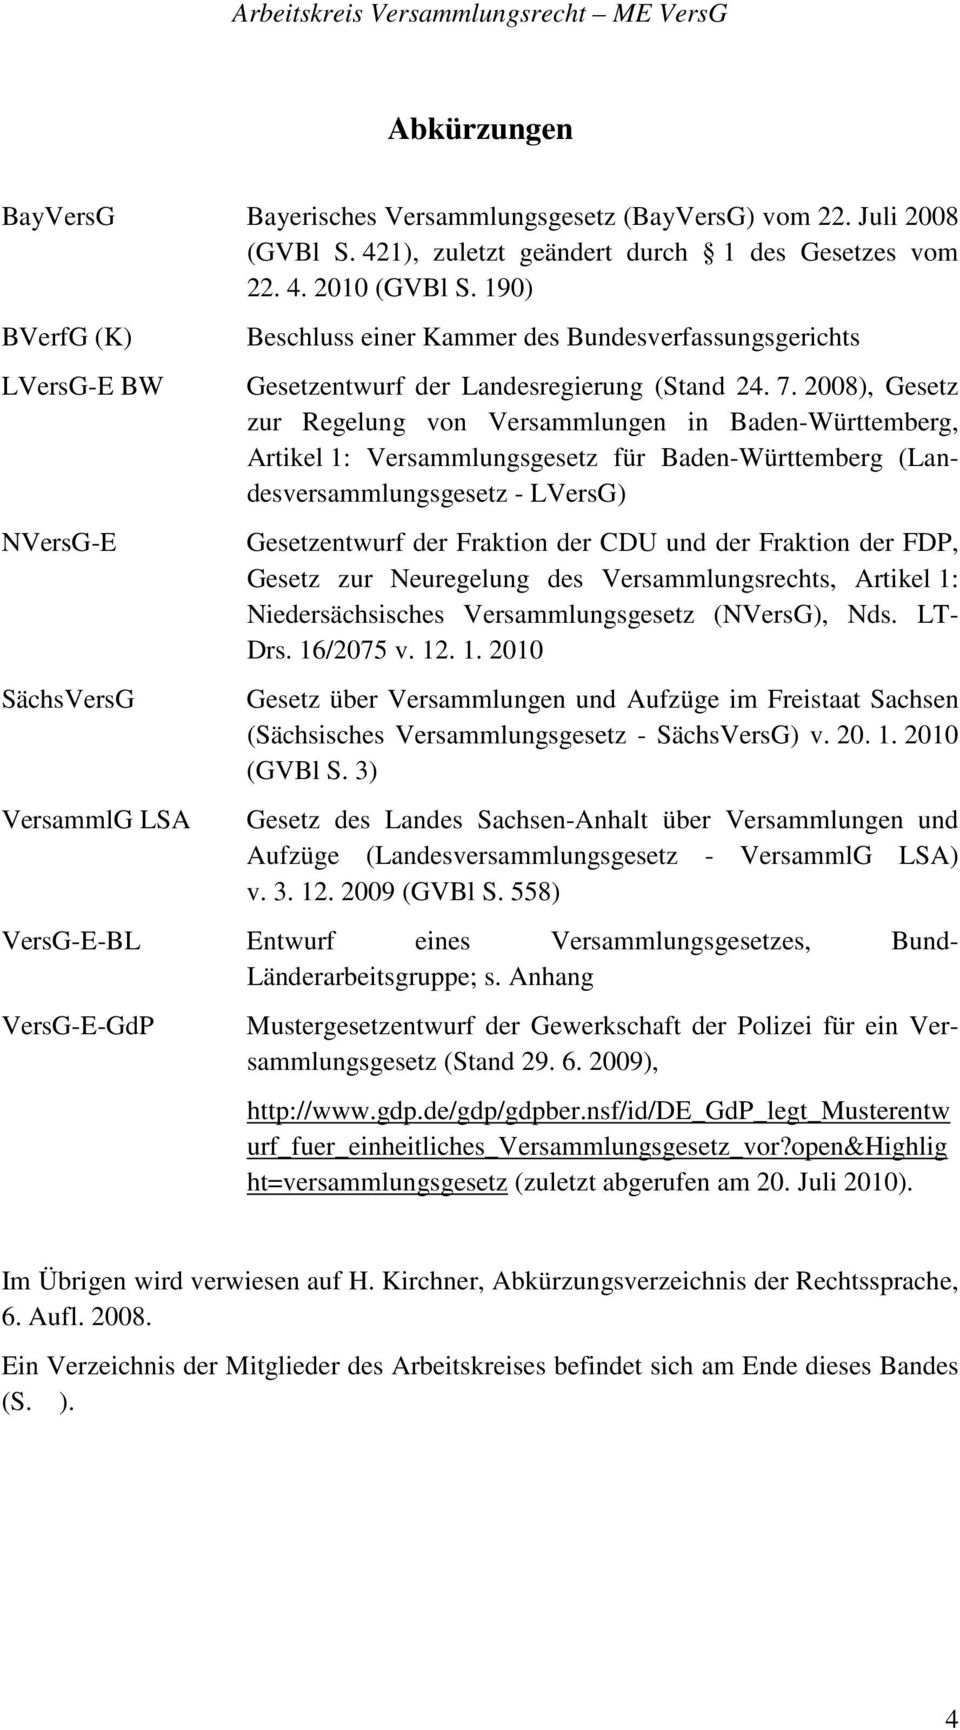 2008), Gesetz zur Regelung von Versammlungen in Baden-Württemberg, Artikel 1: Versammlungsgesetz für Baden-Württemberg (Landesversammlungsgesetz - LVersG) Gesetzentwurf der Fraktion der CDU und der